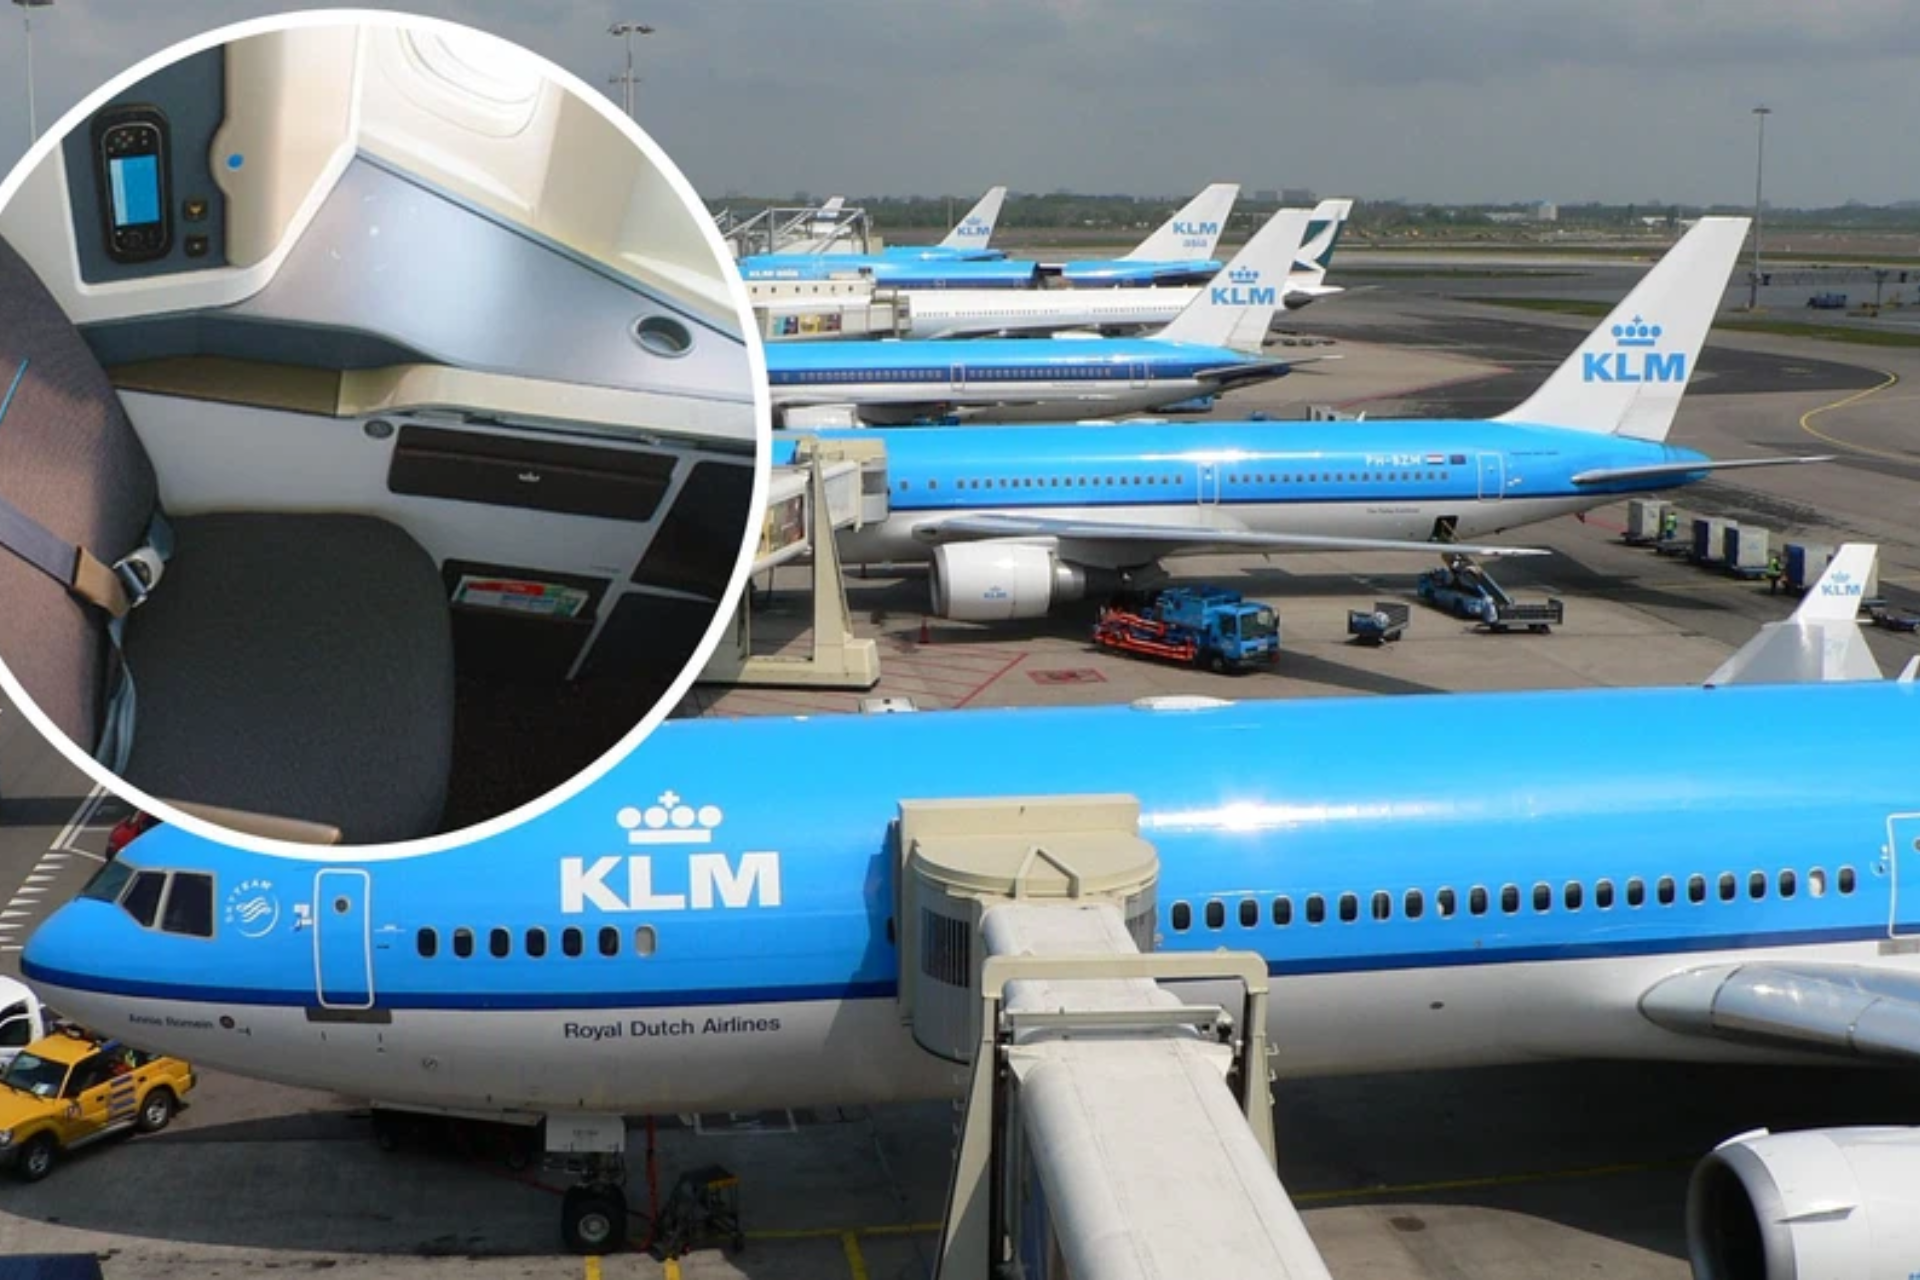 KLM Airlines food waste